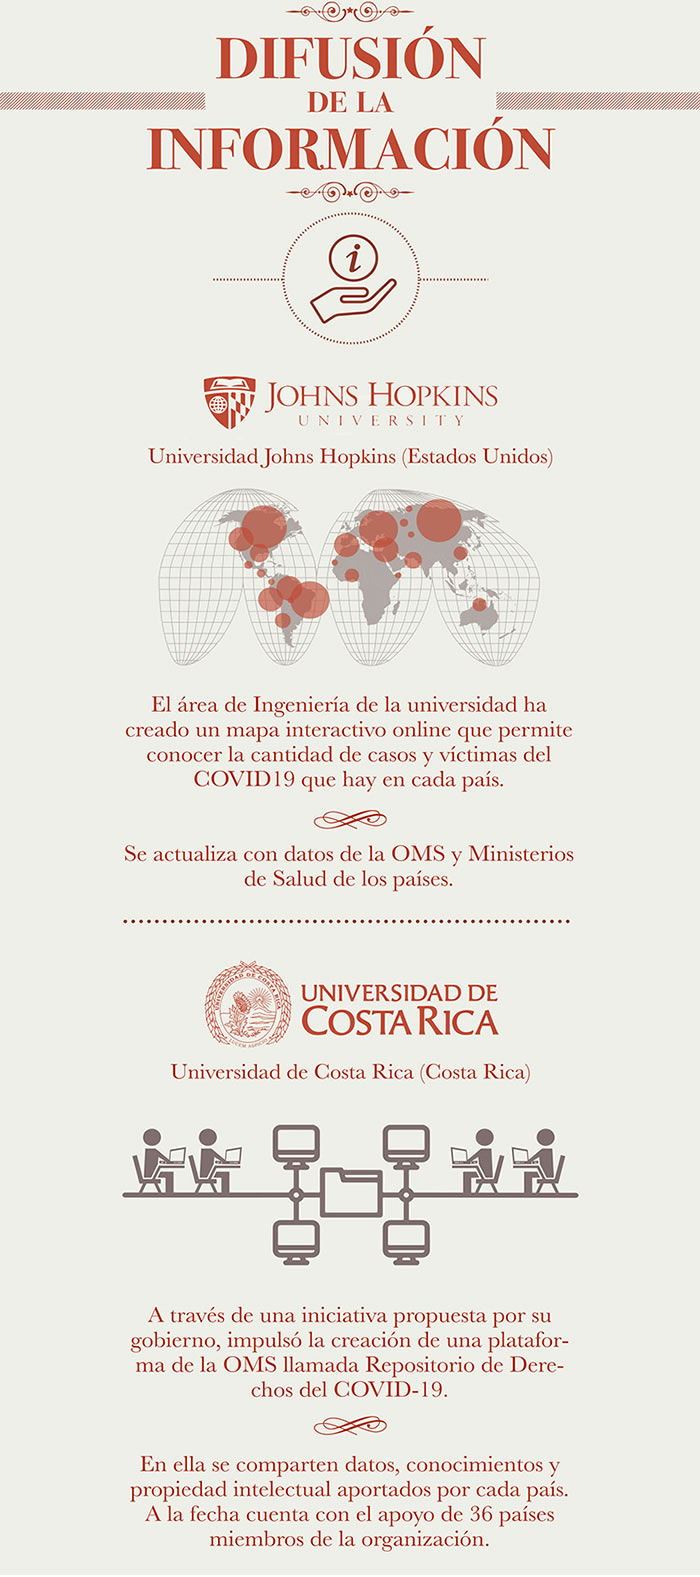 UNIVERSIDADES CONTRA EL COVID DIFUSION DE INFORMACIÓN